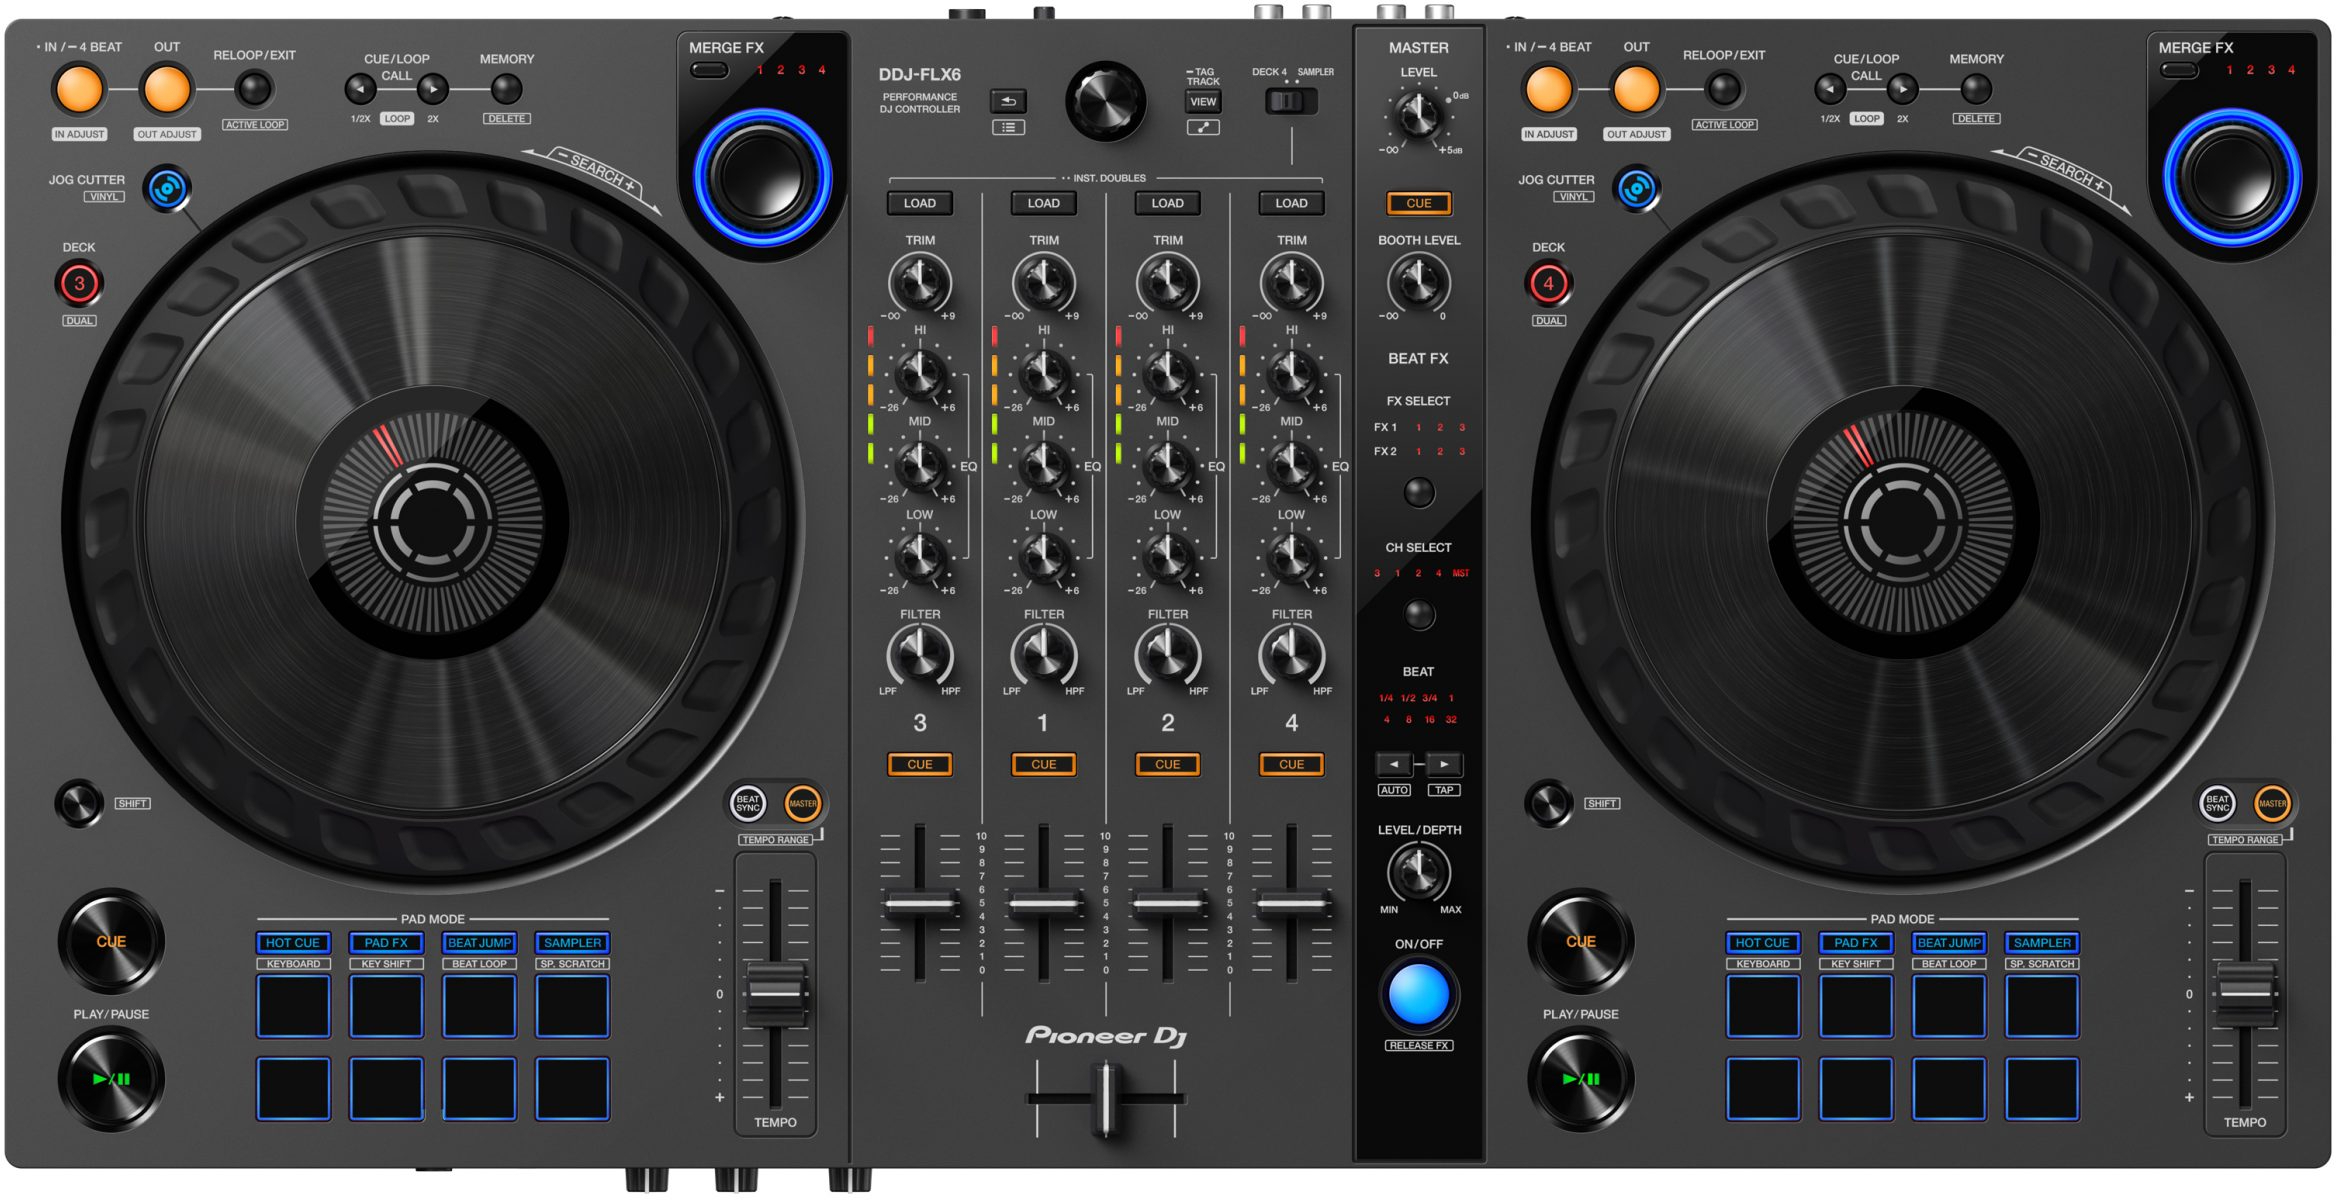 Pioneer Dj Ddj-flx6-gt - USB DJ controller - Main picture